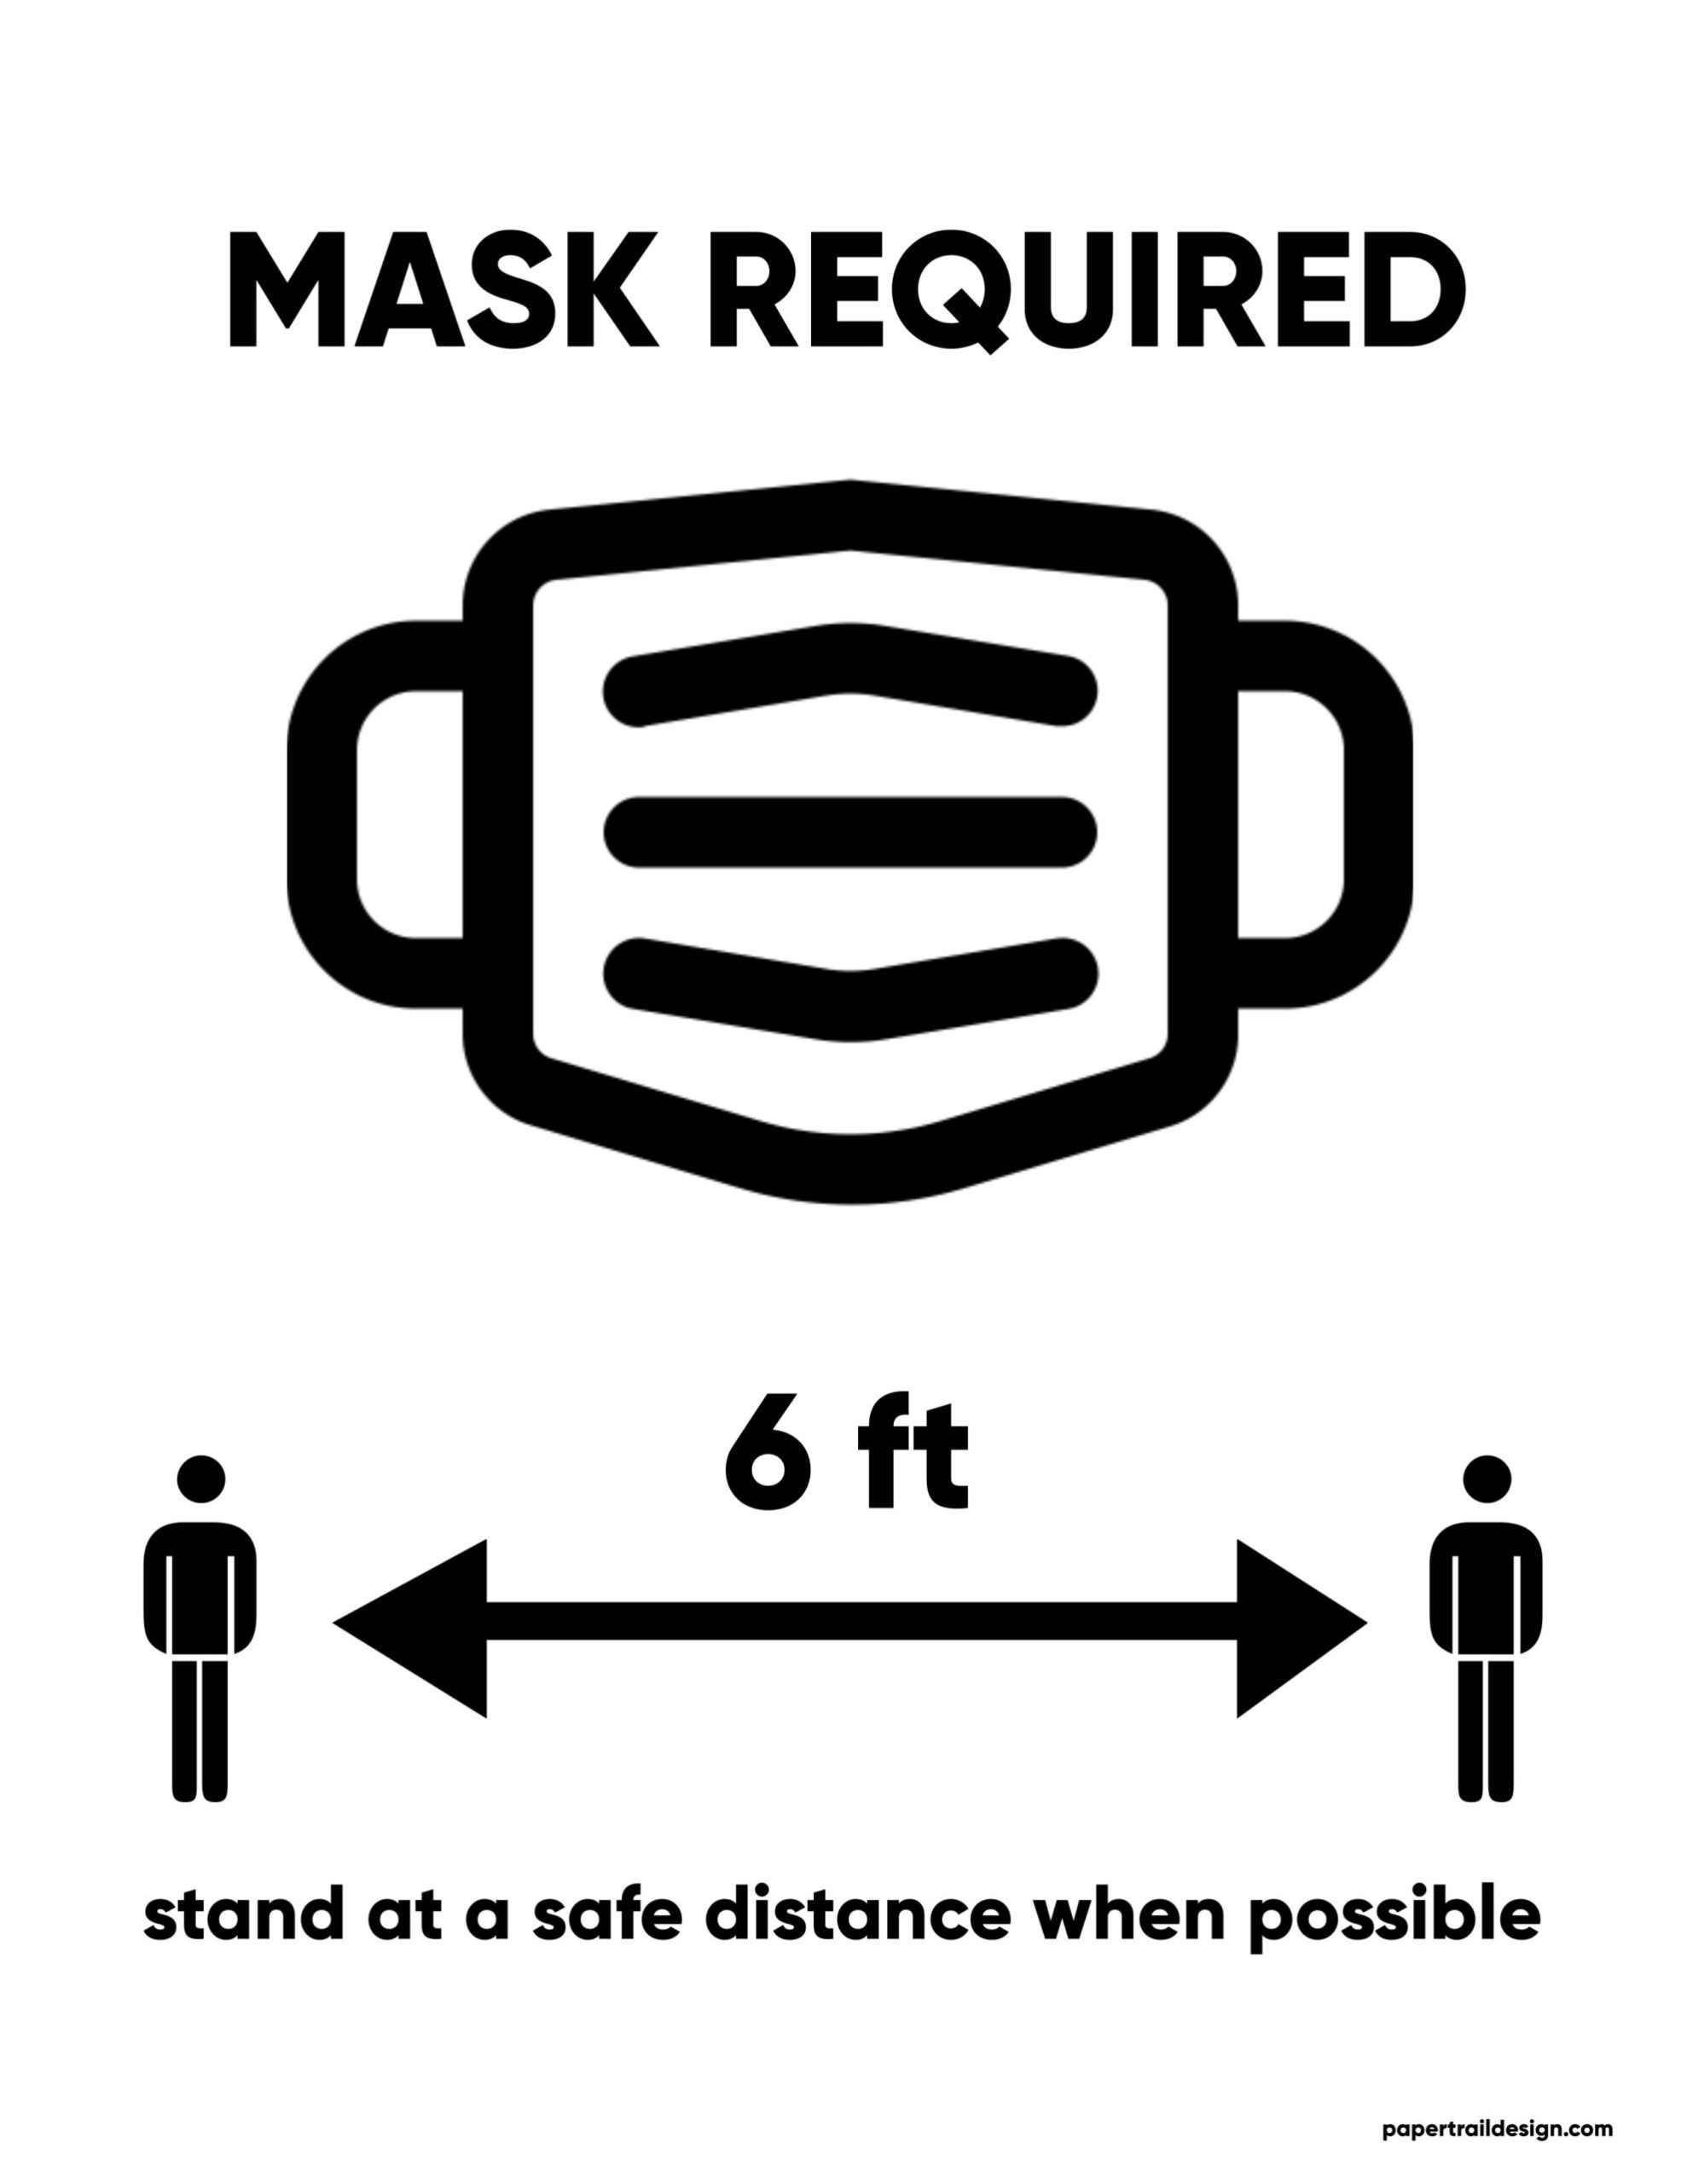 Mask-6ft-sign